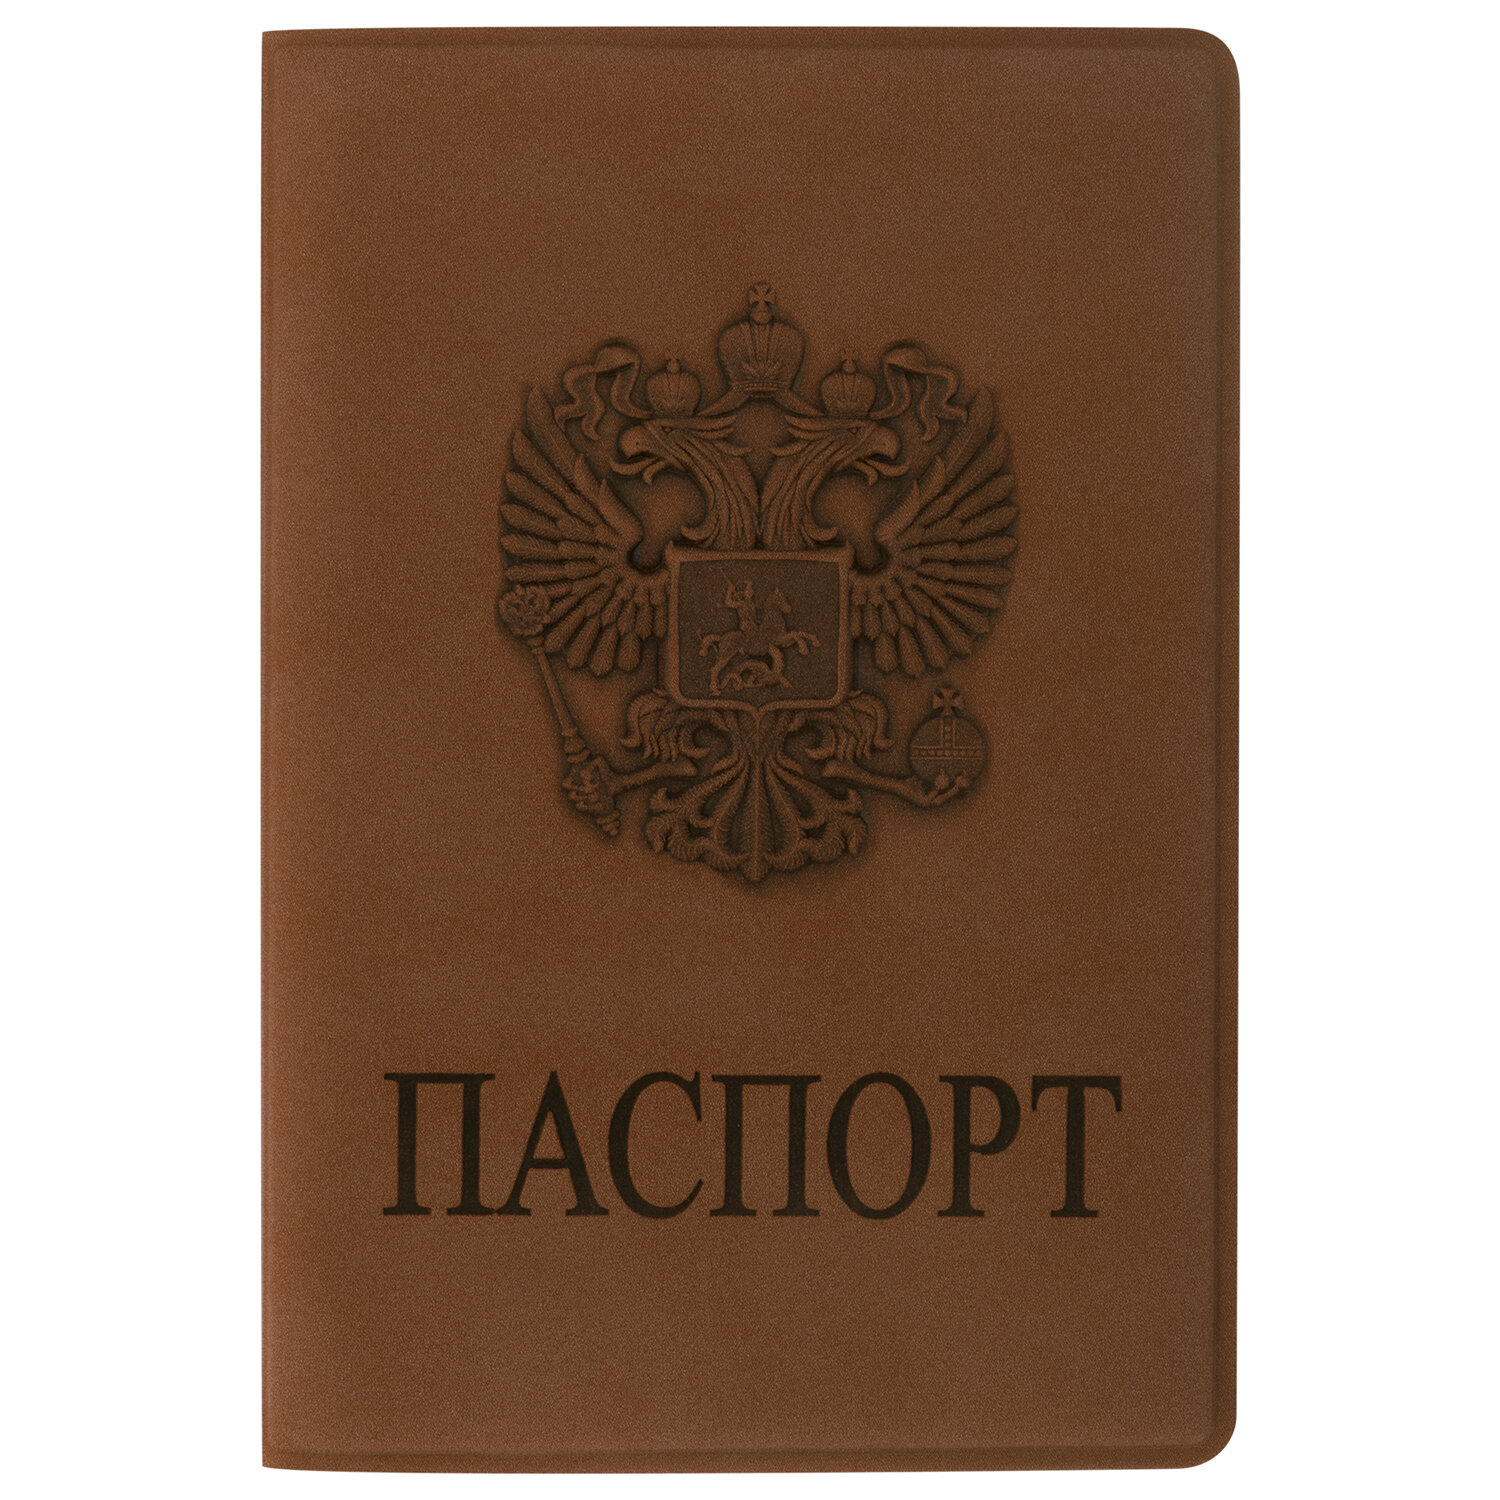 Обложка для паспорта Staff мягкий полиуретан, с гербом, светло-коричневый